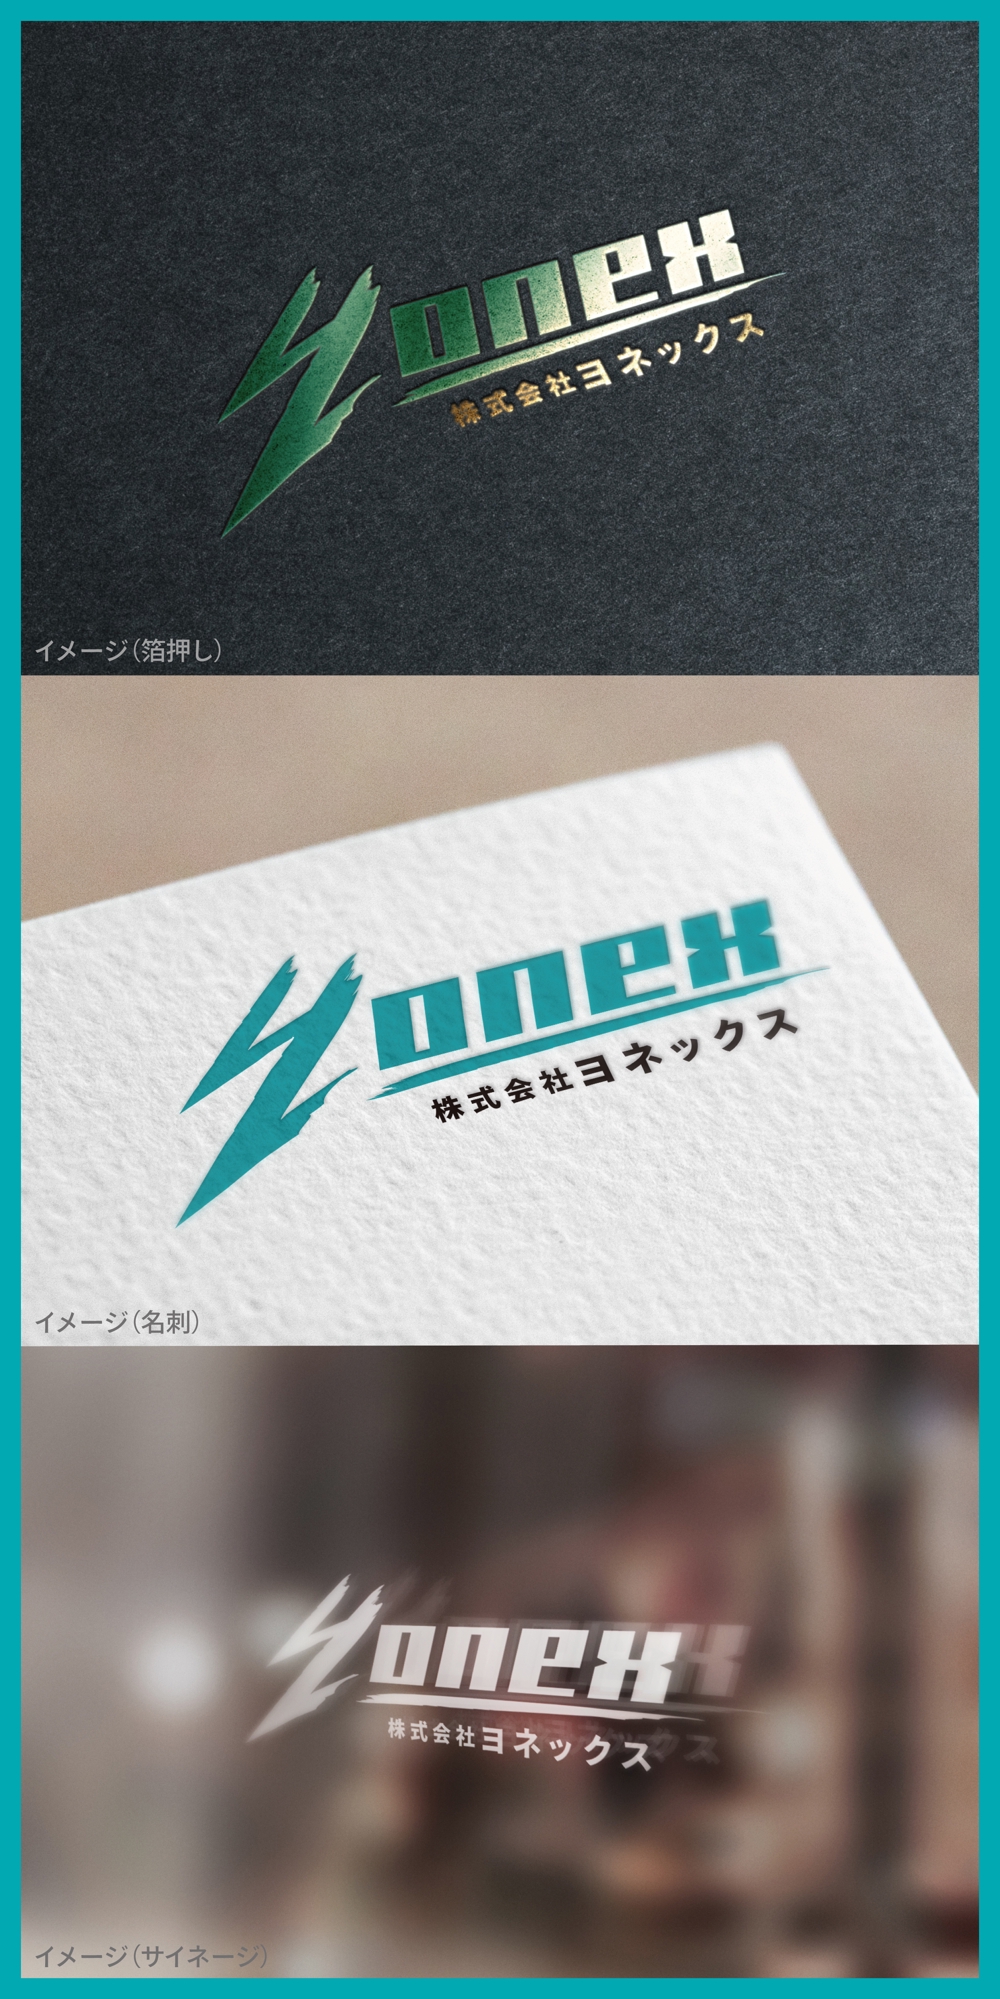 Yonex_logo01_01.jpg